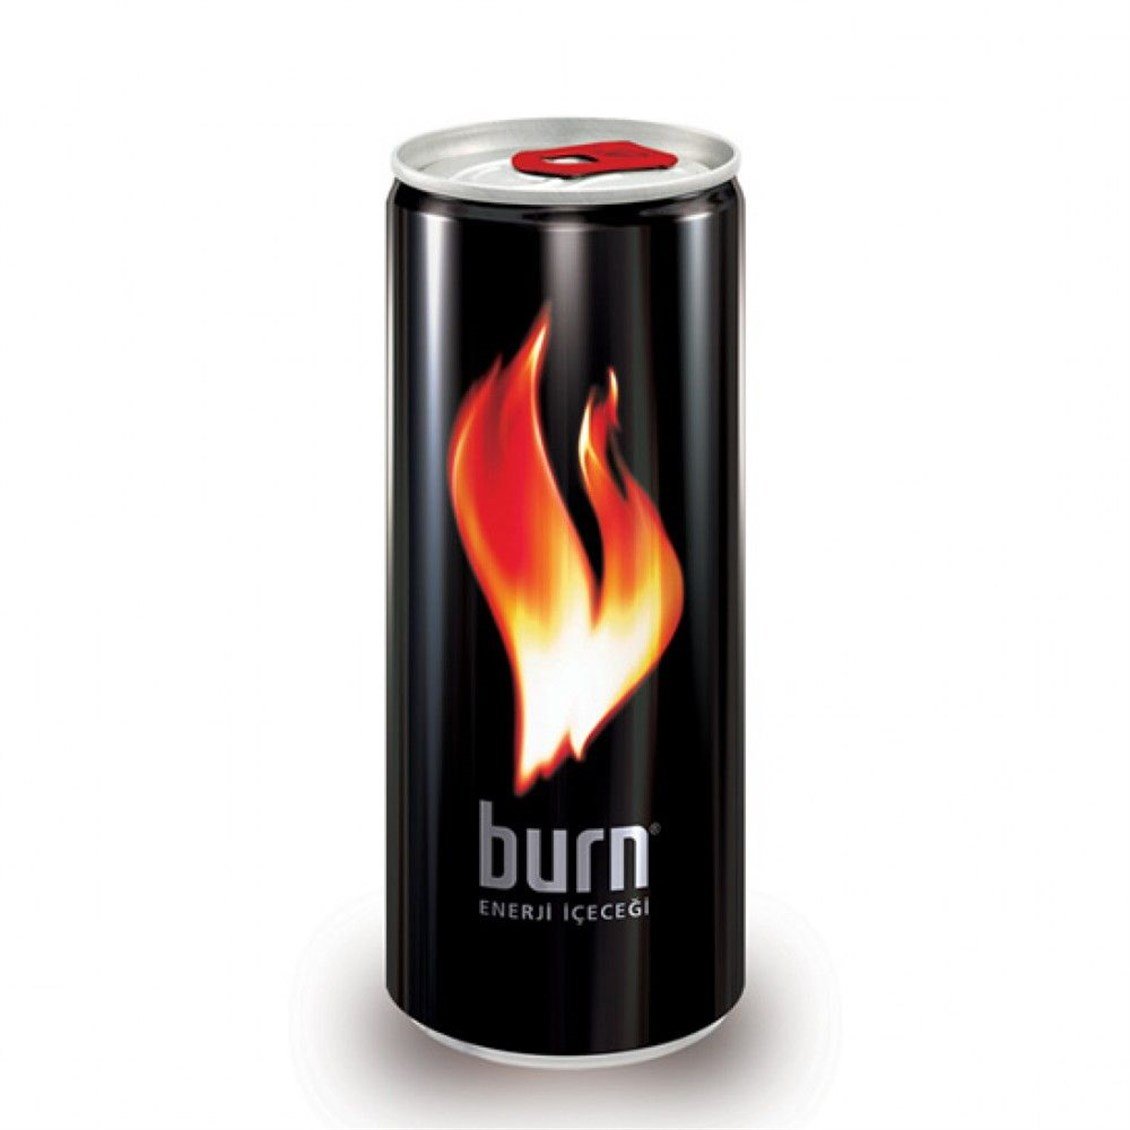 Burn Enerji İçeceği 250 ml - Onur Market